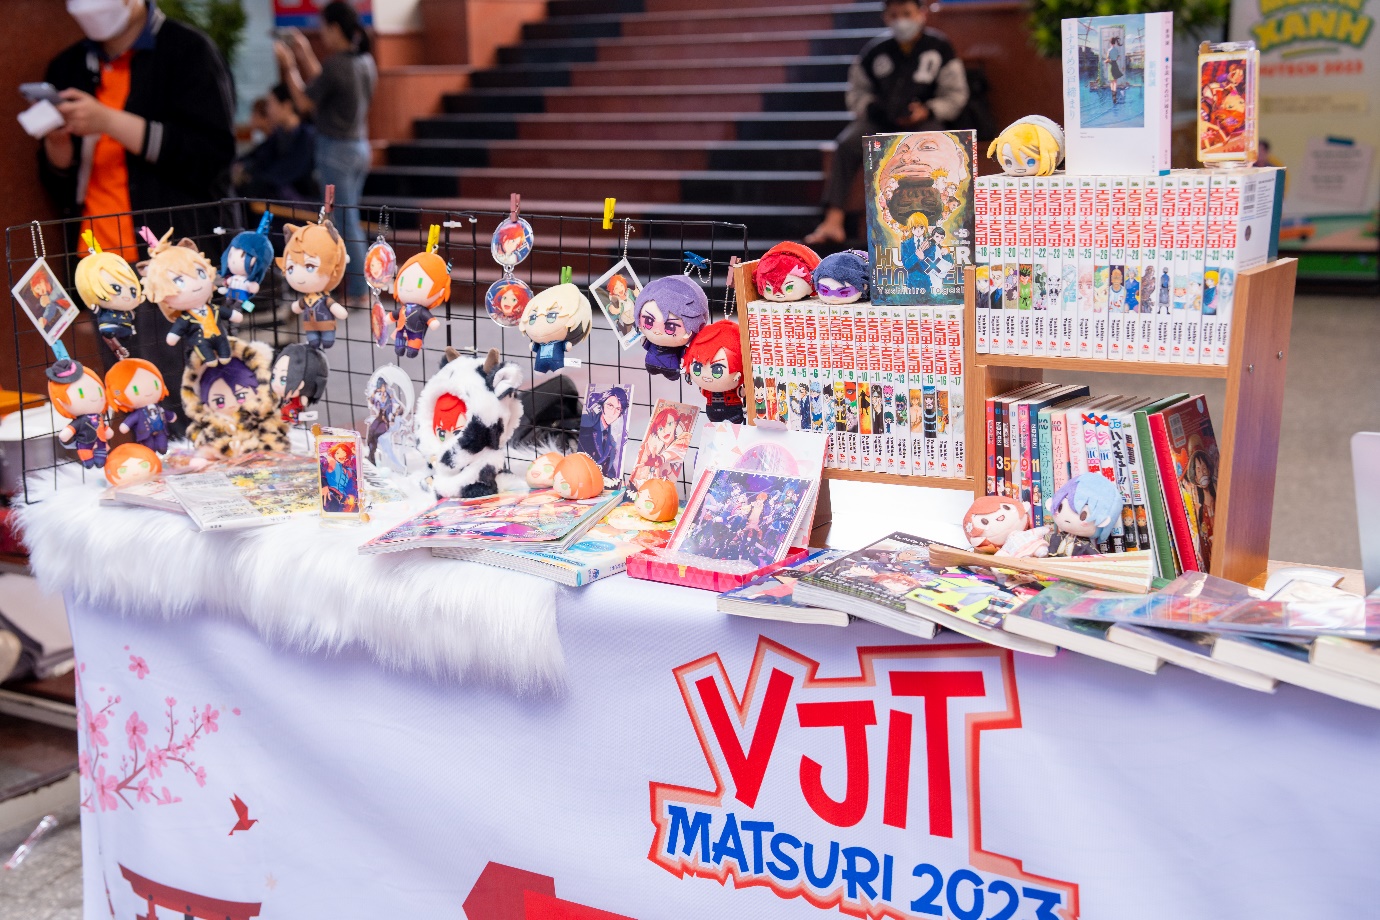 Đặc sắc không gian văn hóa Nhật Bản “VJIT MATSURI 2023” tại HUTECH - Ảnh 2.